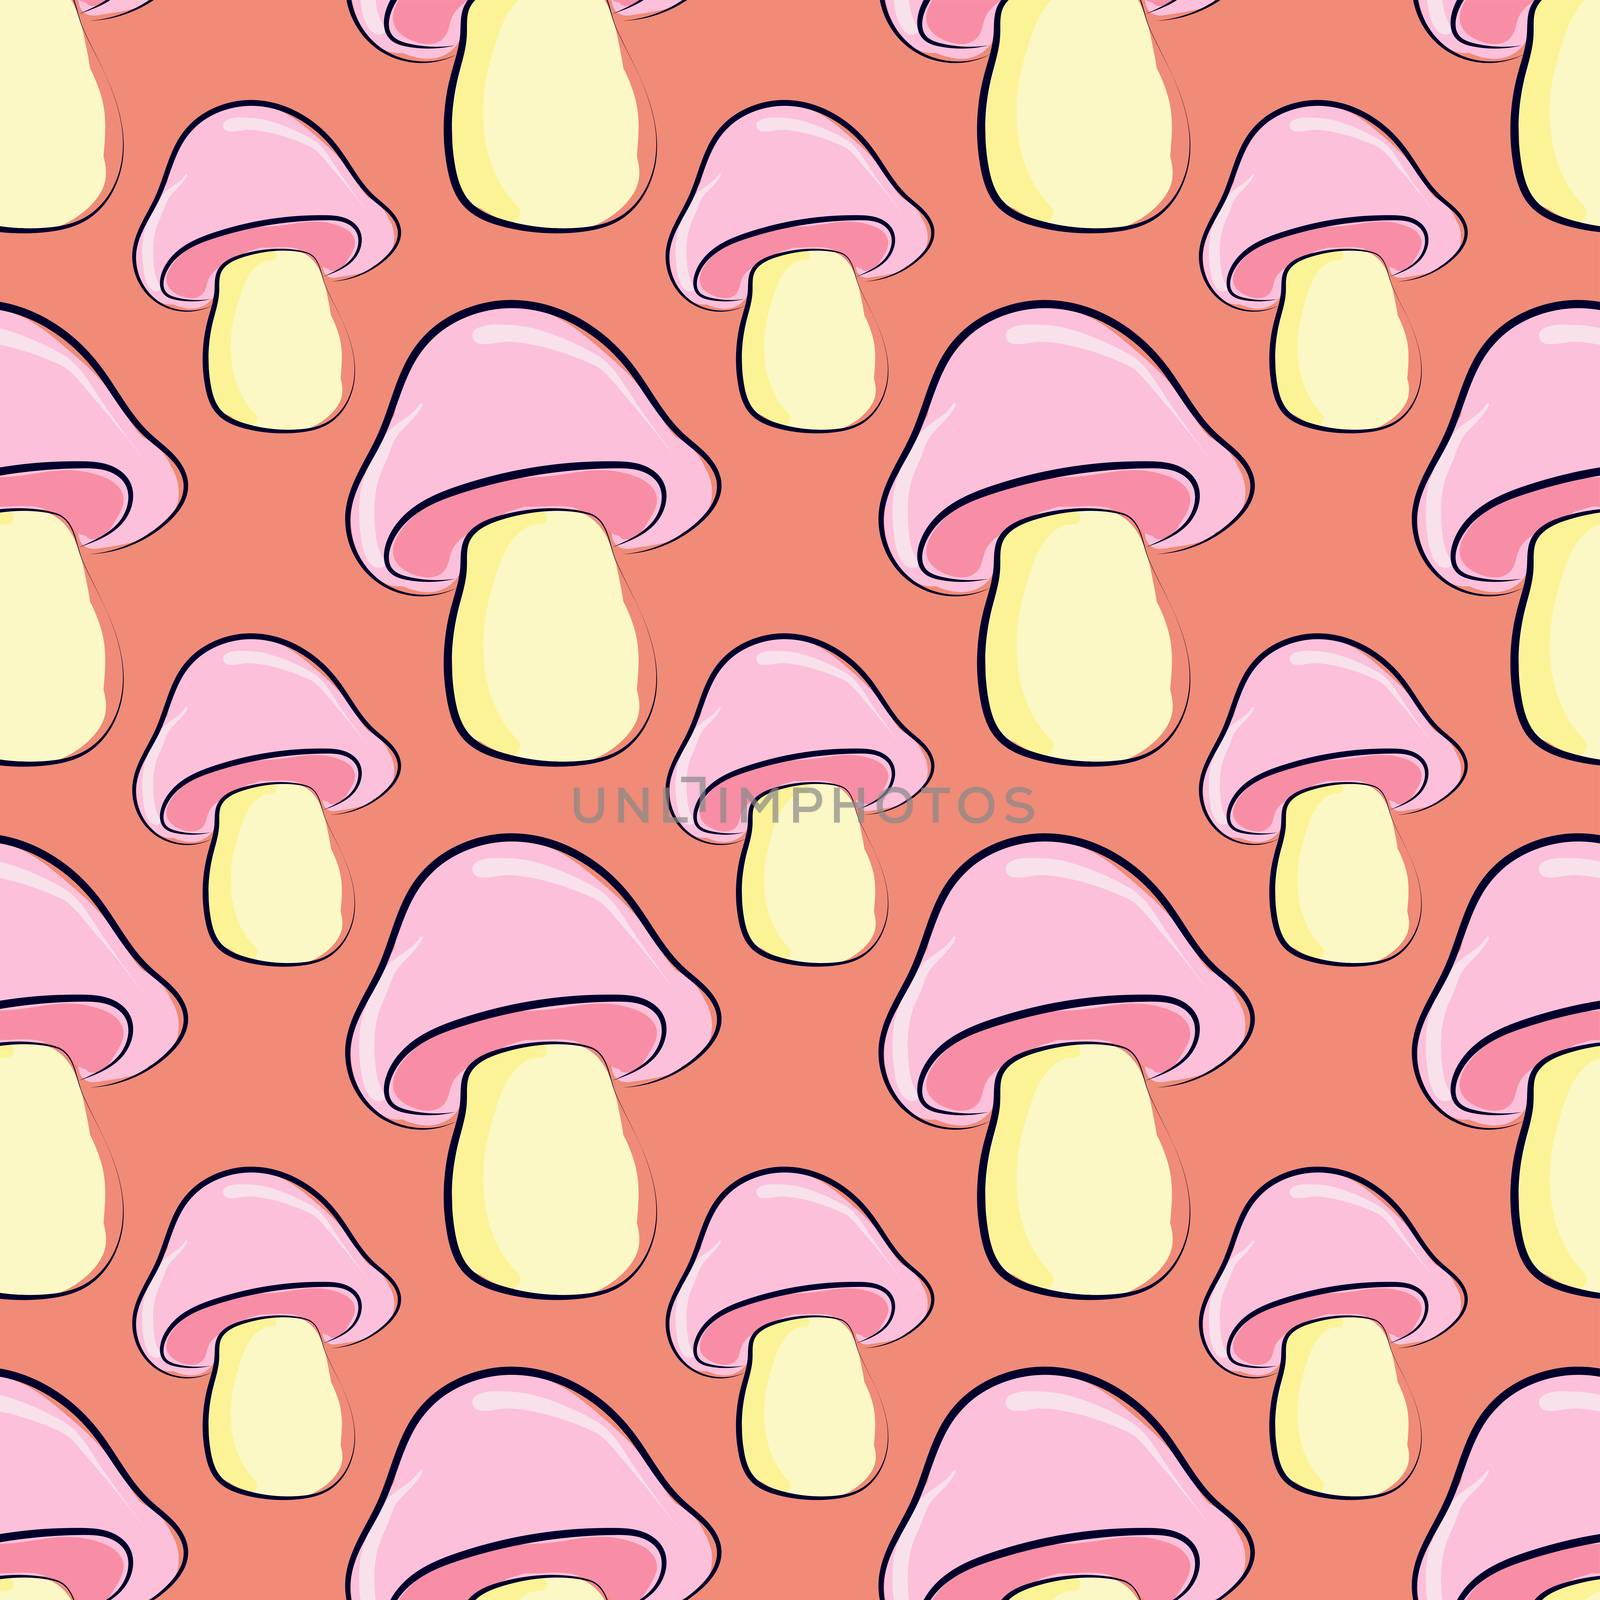 Mushrooms pattern , illustration, vector on white background by Morphart